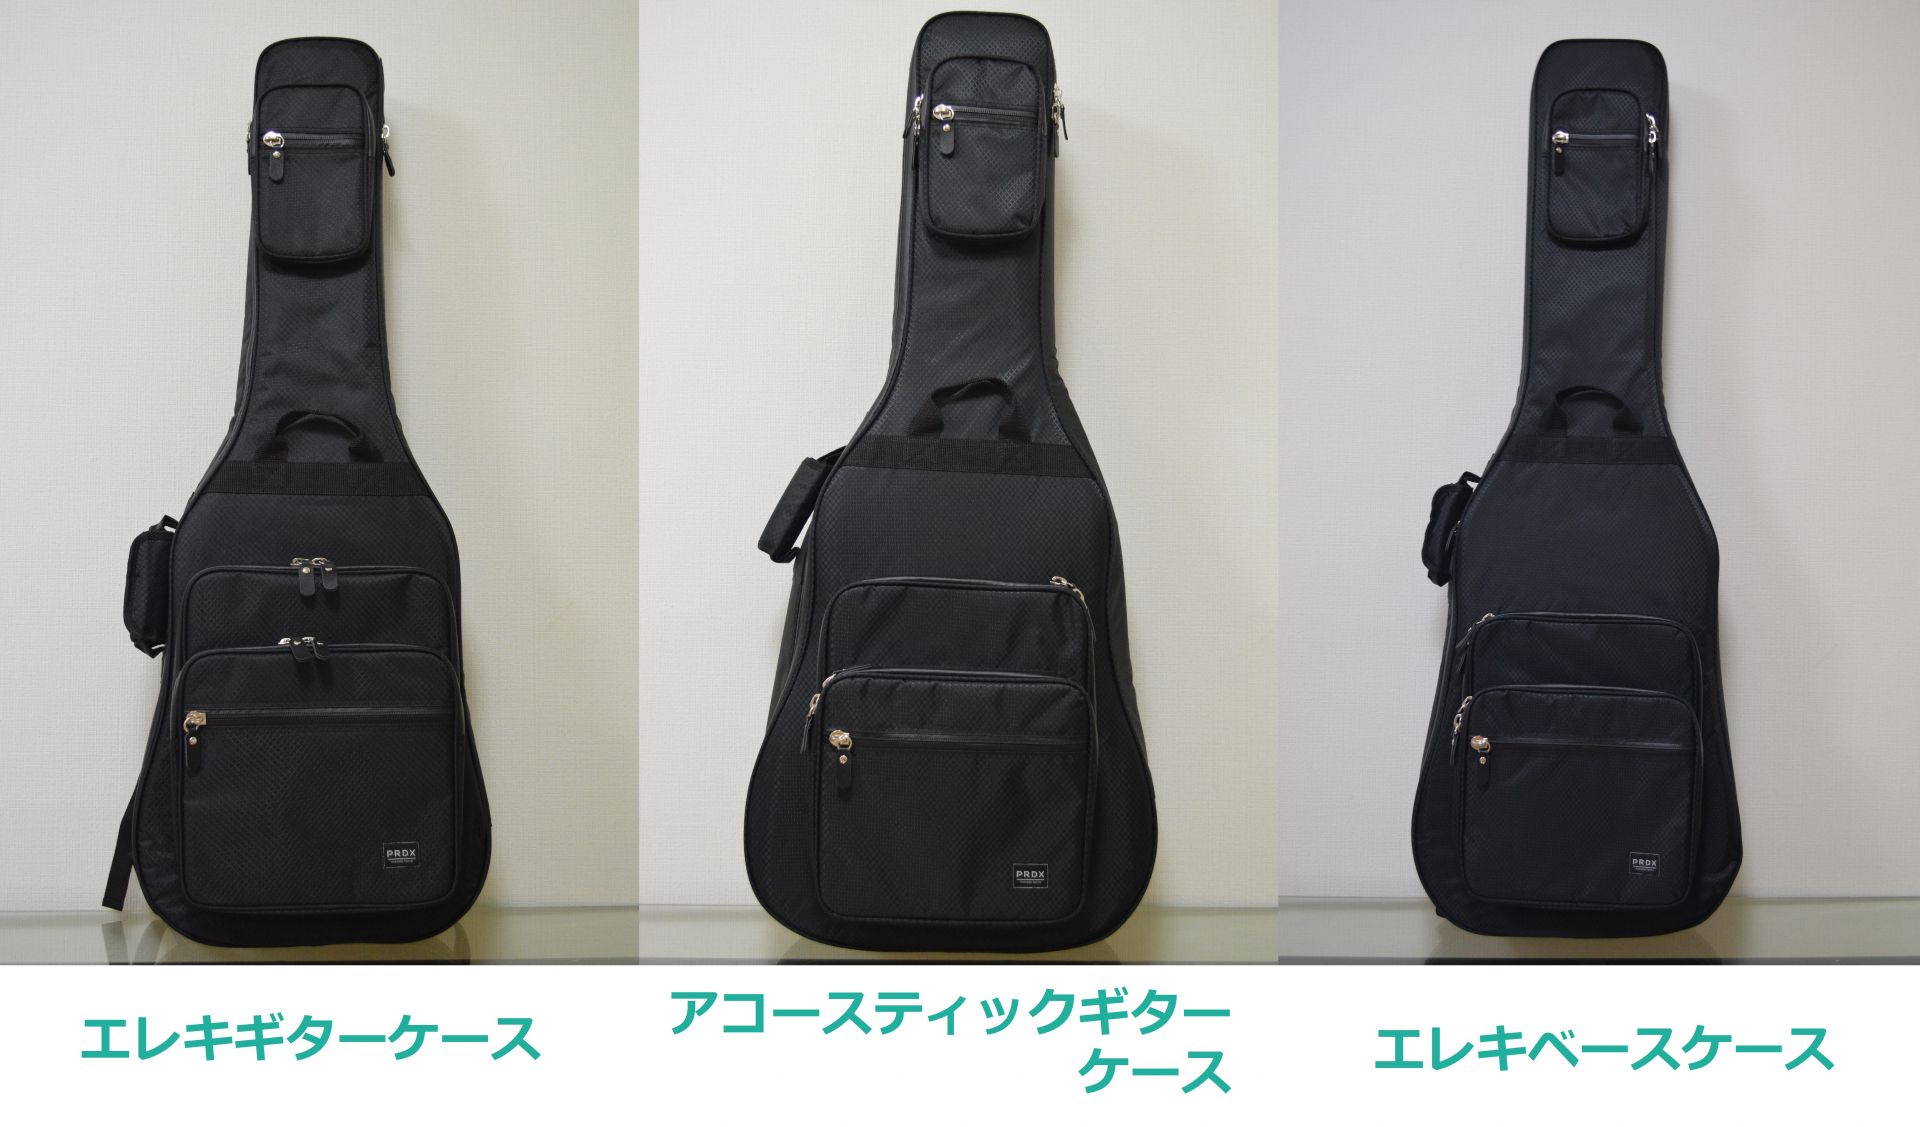 *『PARADOX TOKYO×島村楽器』ギターケースラインナップ追加！ 有名アーティストに衣装提供の実績があるアパレルブランド『PARADOX TOKYO』より、耐久性や防水性に優れたギターケースが追加でラインナップに登場致します！ 大分店では、[!!ご注文(お取り寄せ)が可能!!]です！気になっ […]